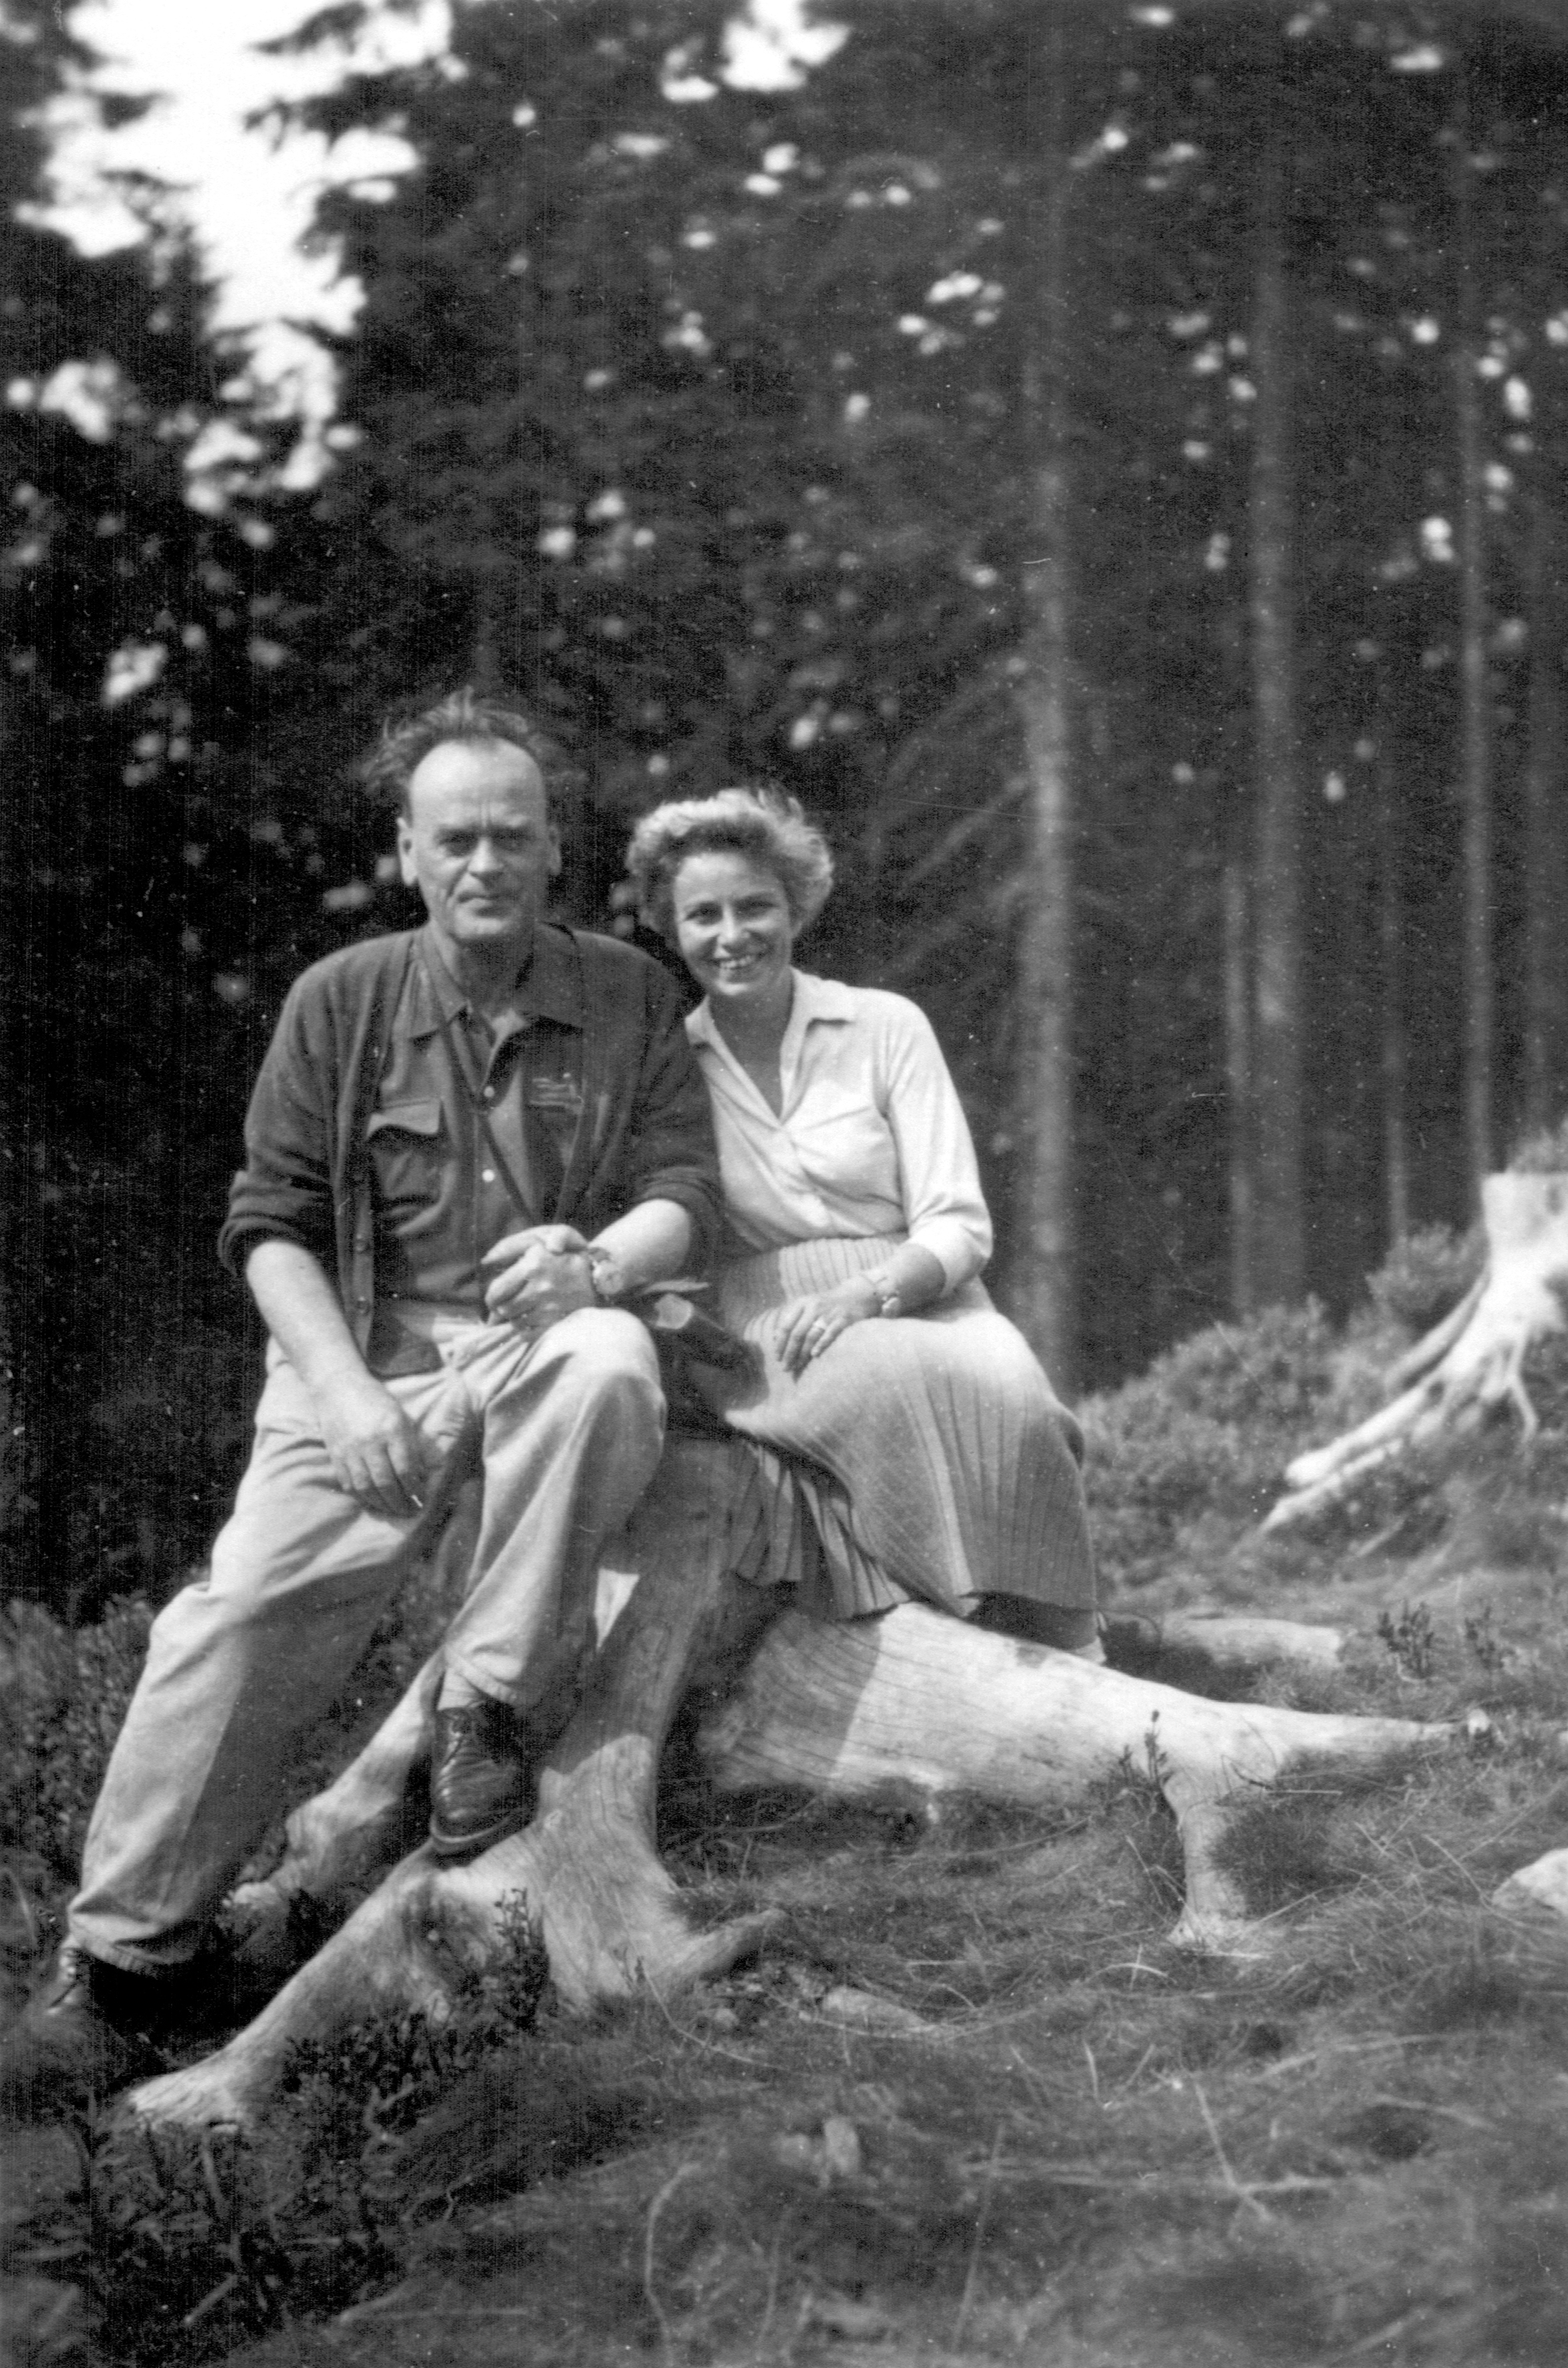 Viera Slesingerova with her husband Jaroslav Slesinger